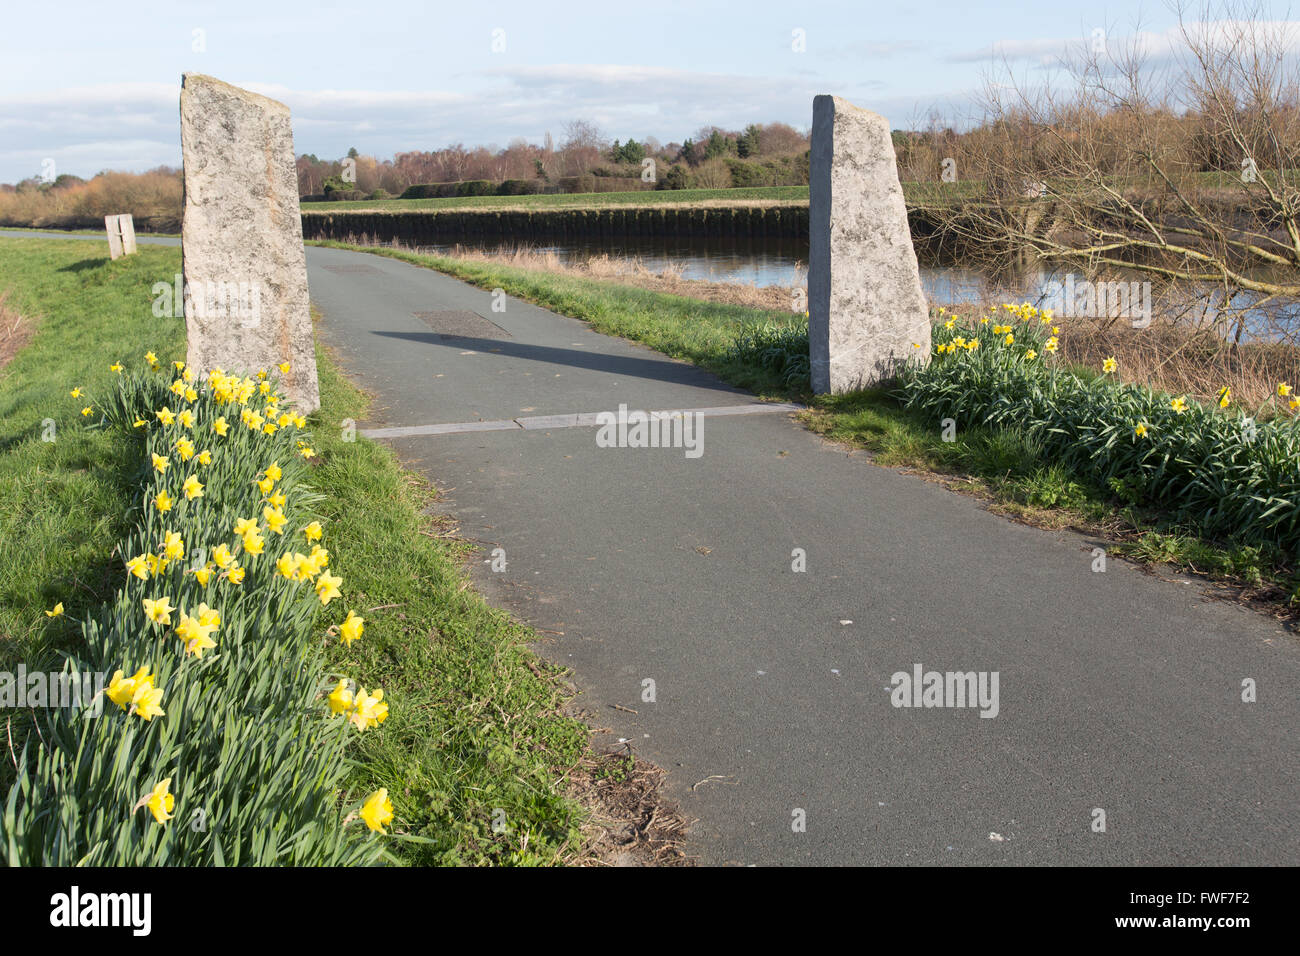 Wales Küstenweg in Nord-Wales. Malerischen Frühling-Blick auf das Ende (oder Anfang) des Wales Küstenweg in Chester. Stockfoto